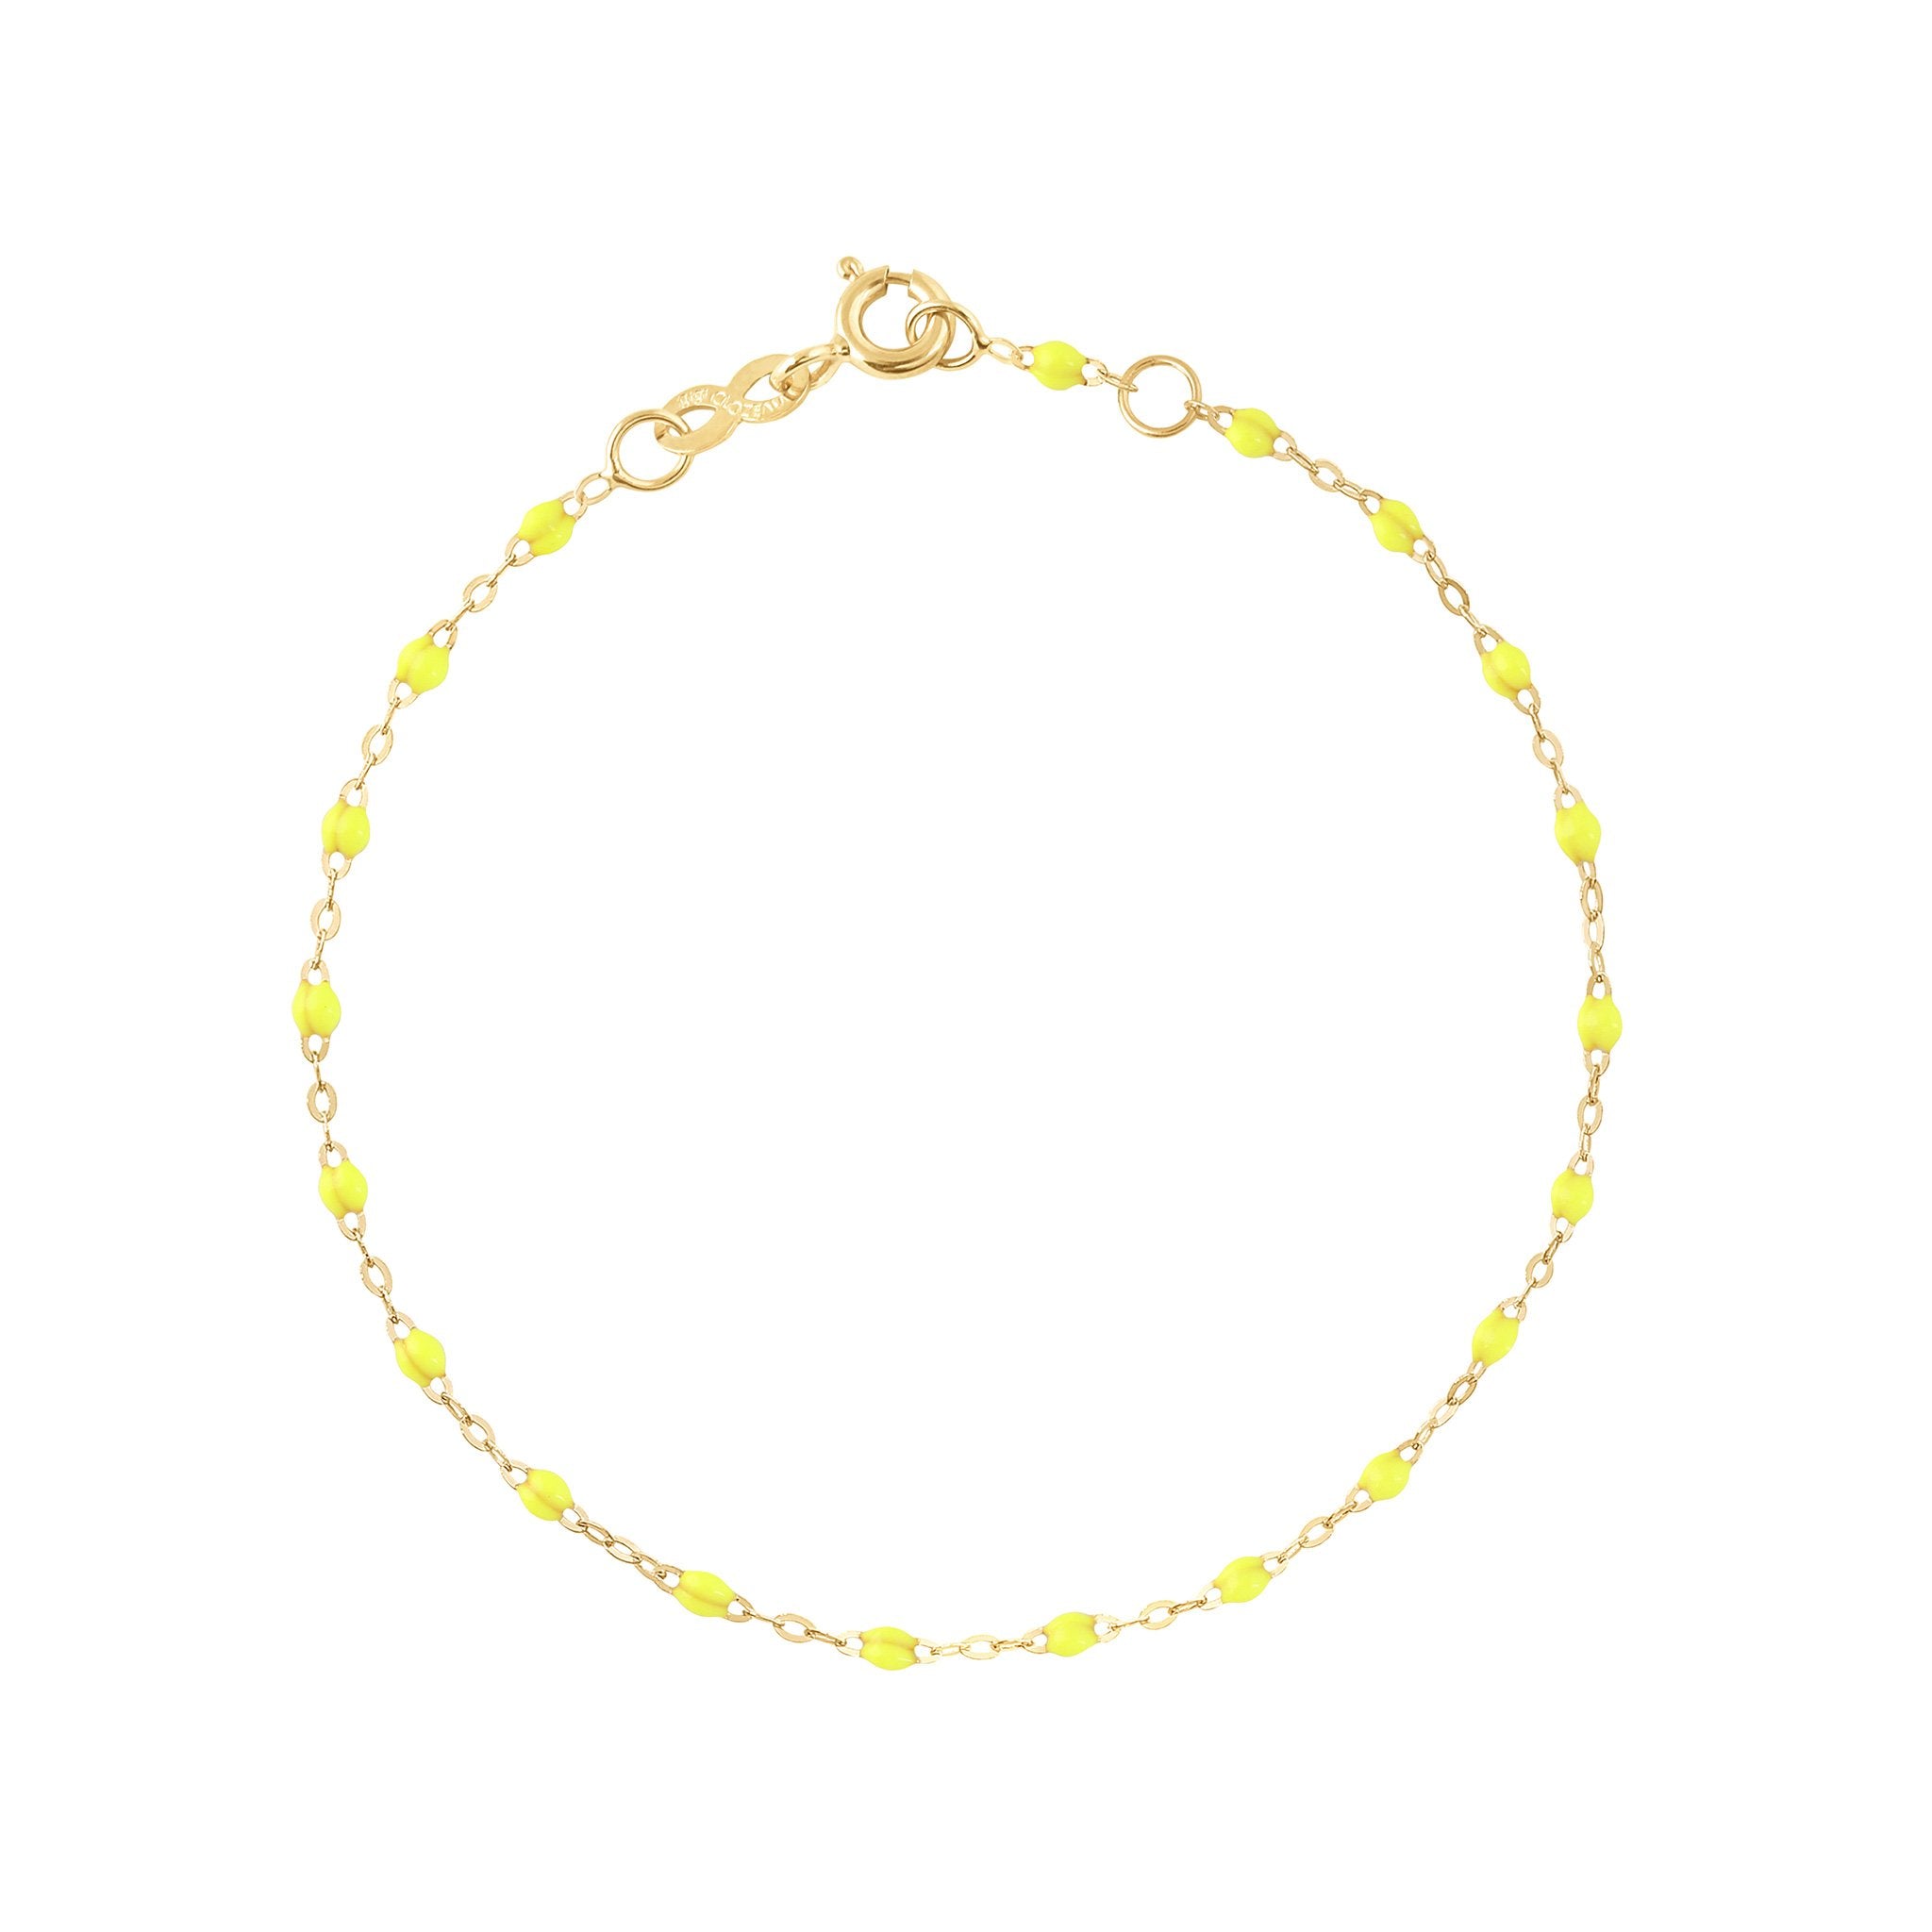 Bracelet jaune fluo Classique Gigi, or jaune, 17 cm classique gigi Référence :  b3gi001j1817xx -1